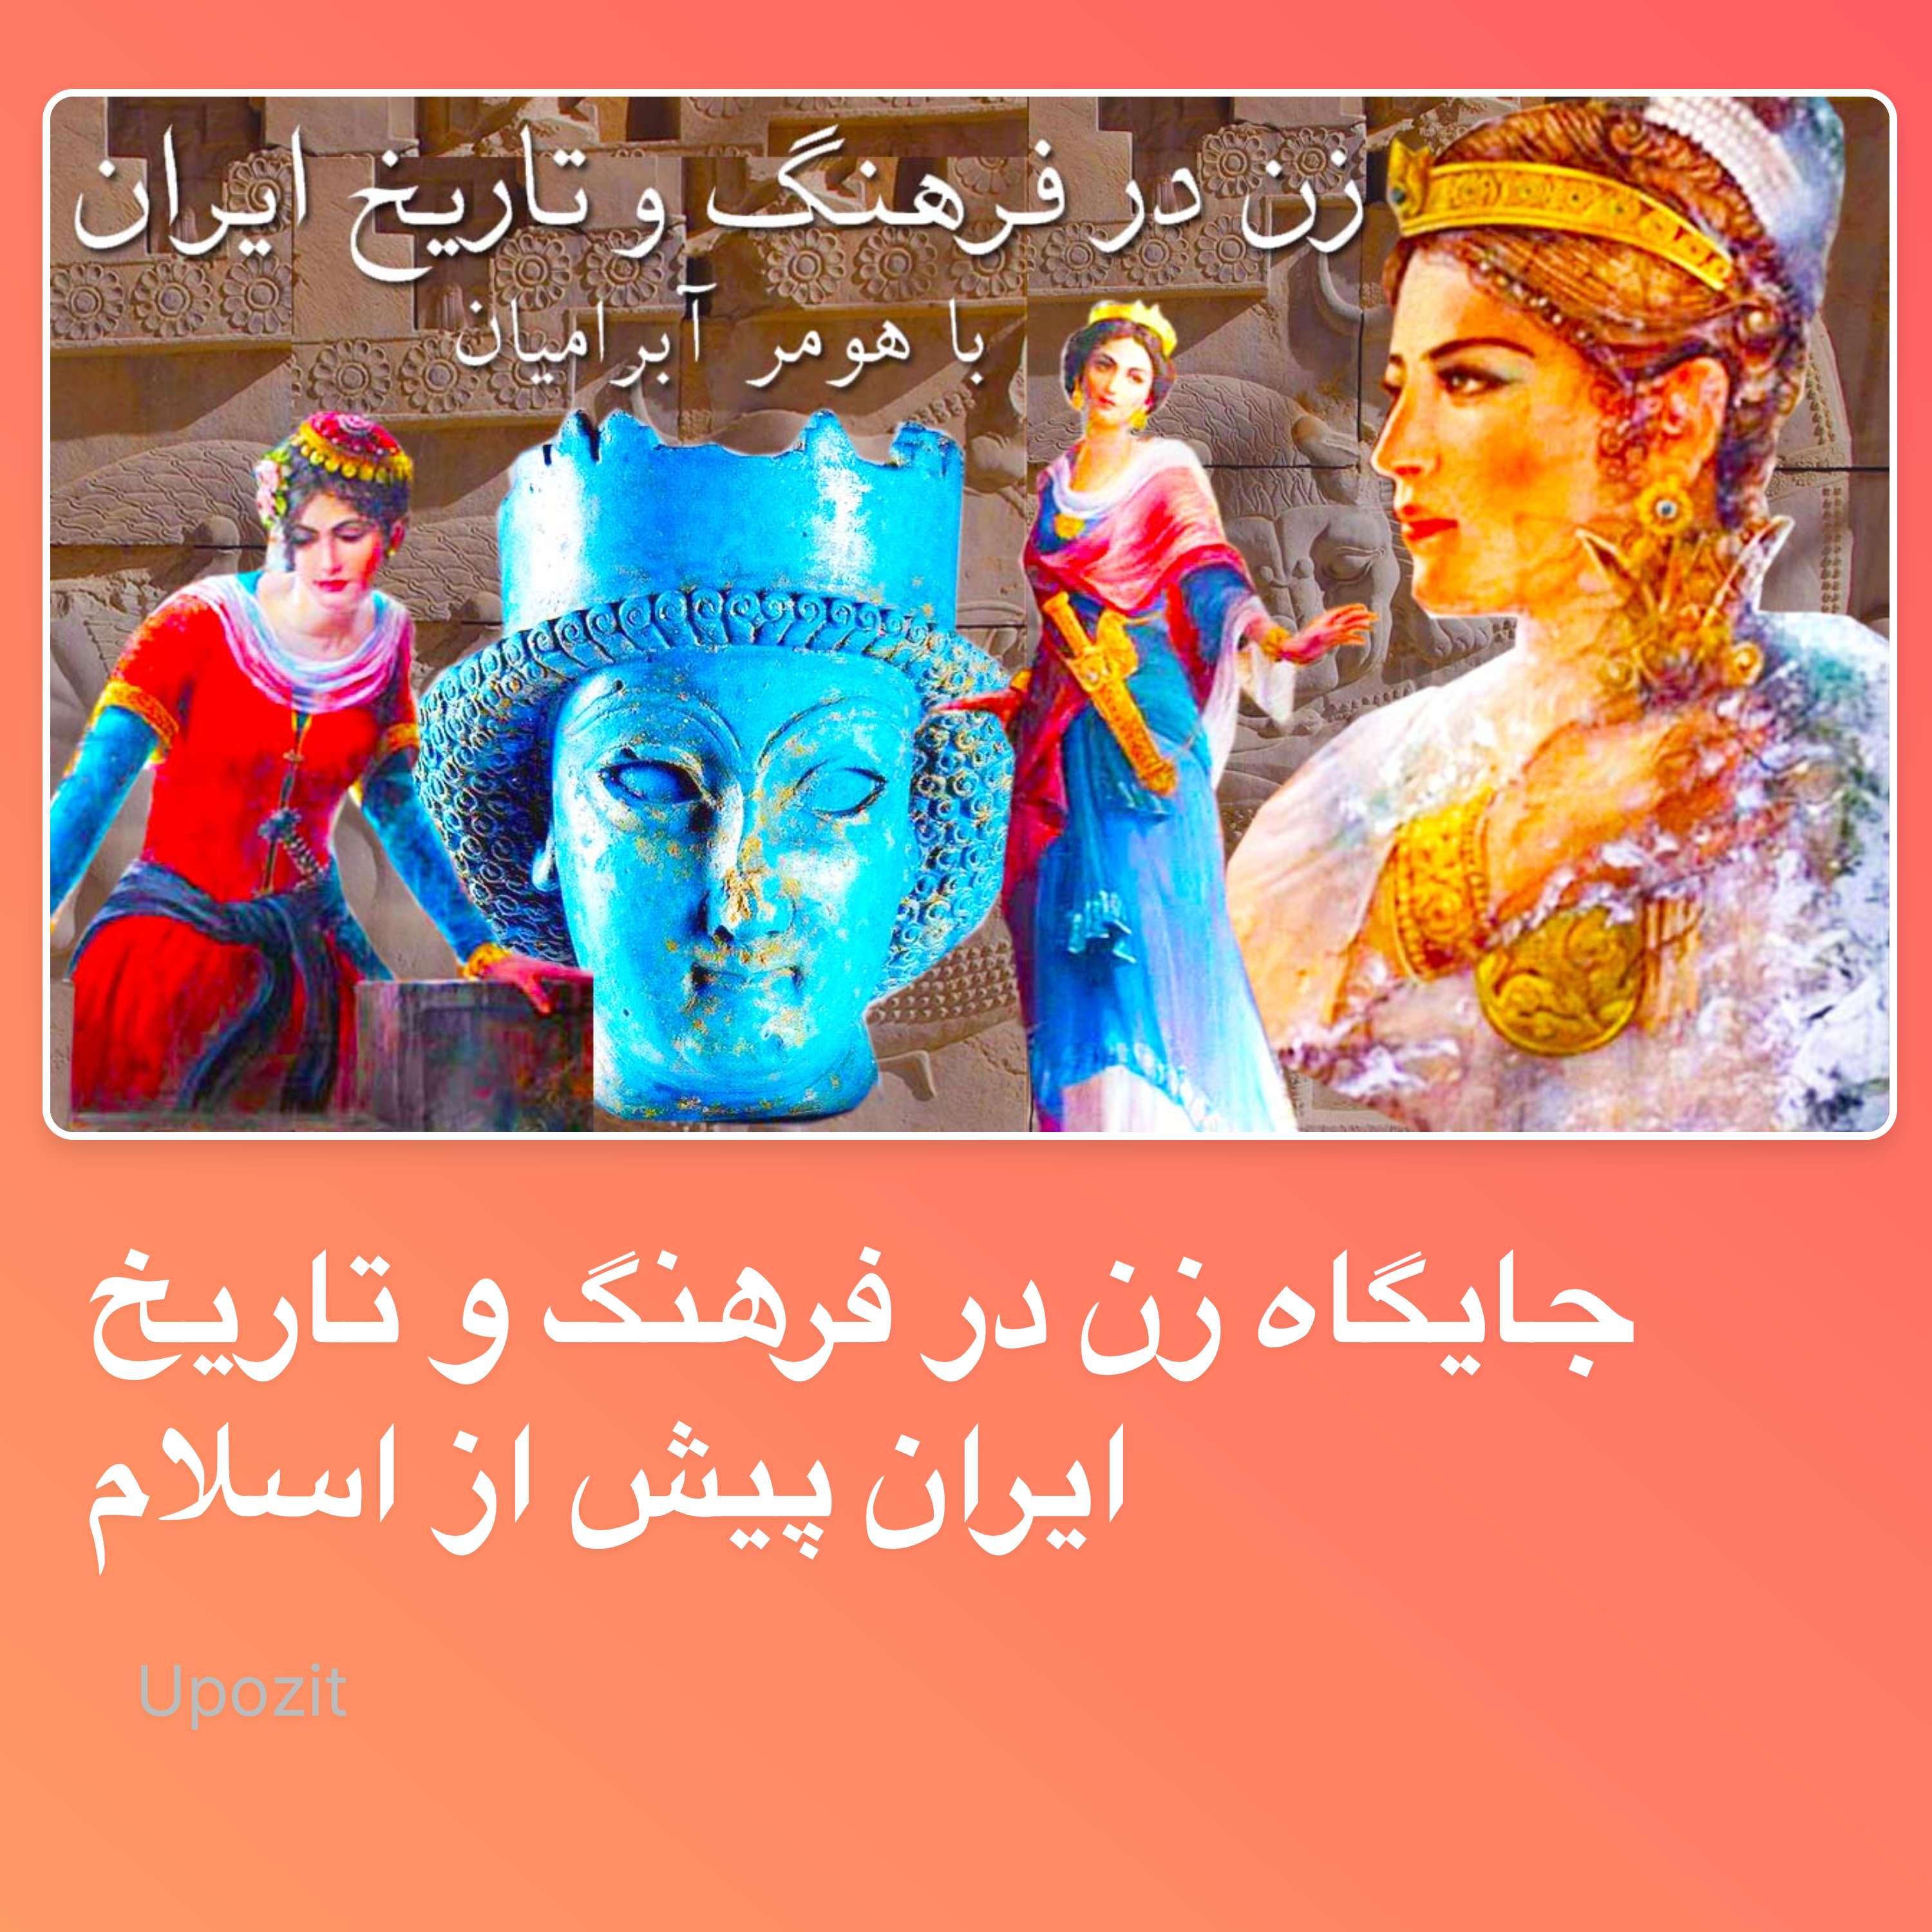 جایگاه زن در فرهنگ و تاریخ ایران پیش از اسلام